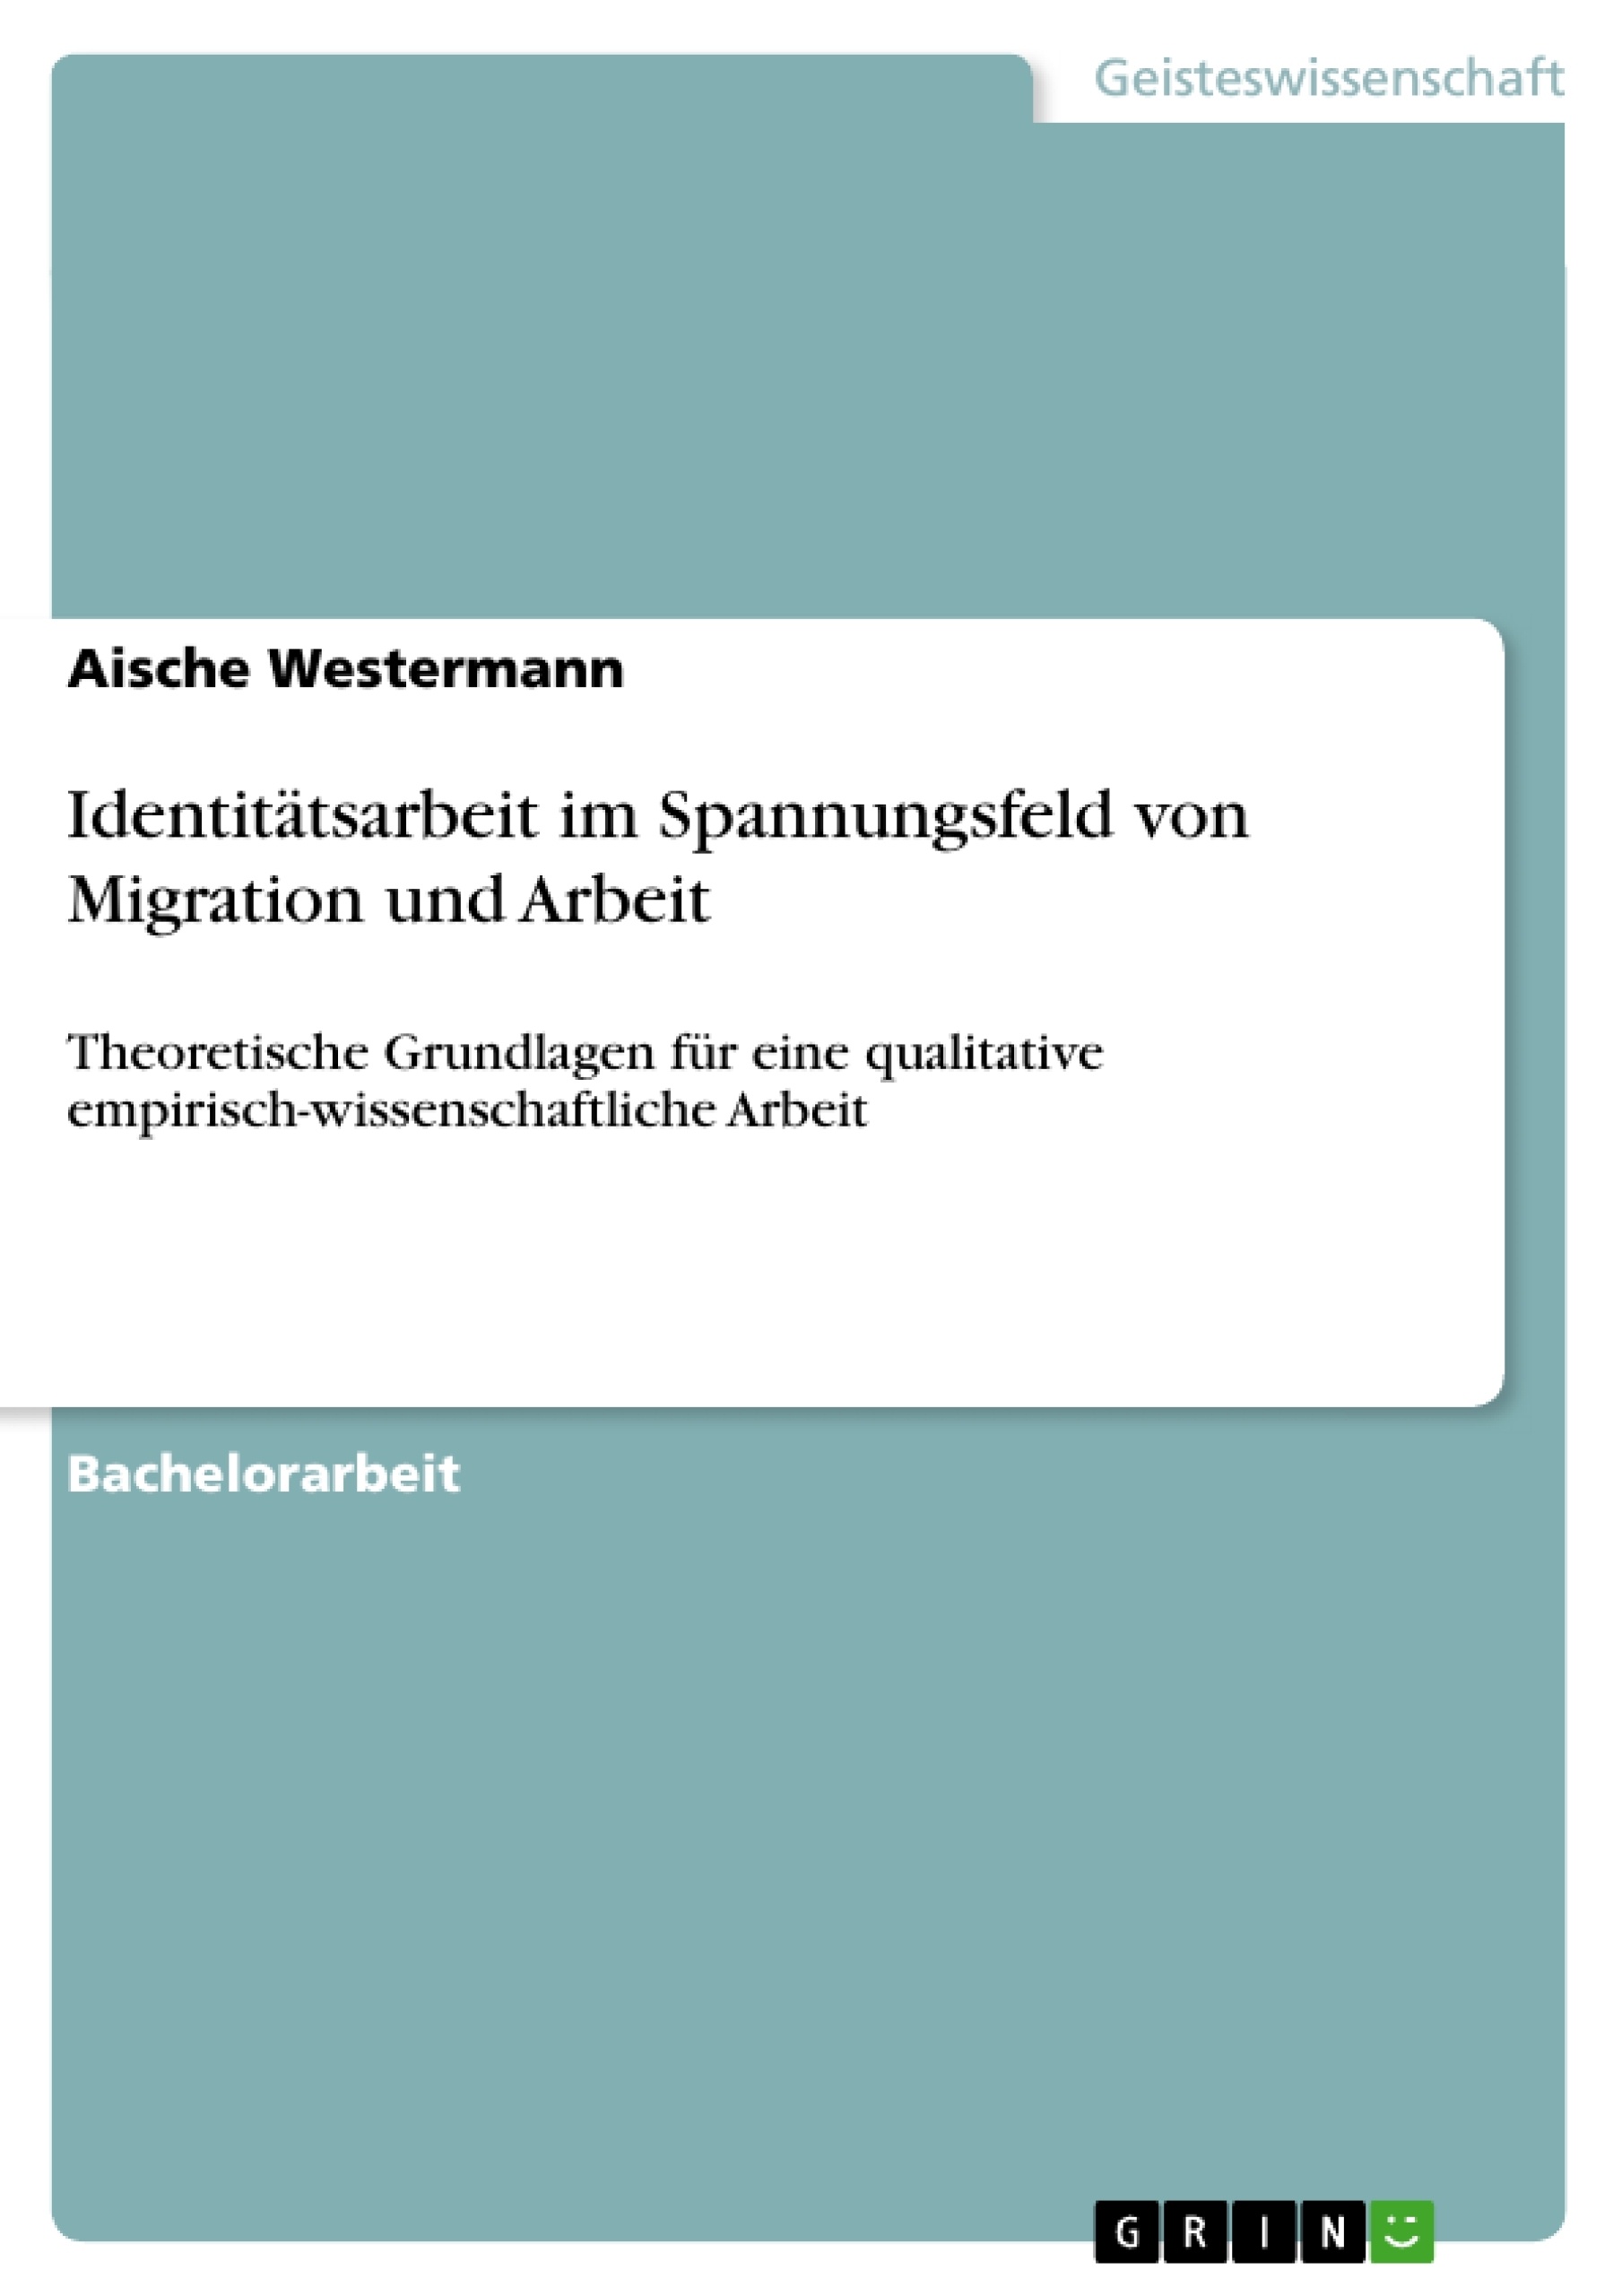 Título: Identitätsarbeit im Spannungsfeld von Migration und Arbeit